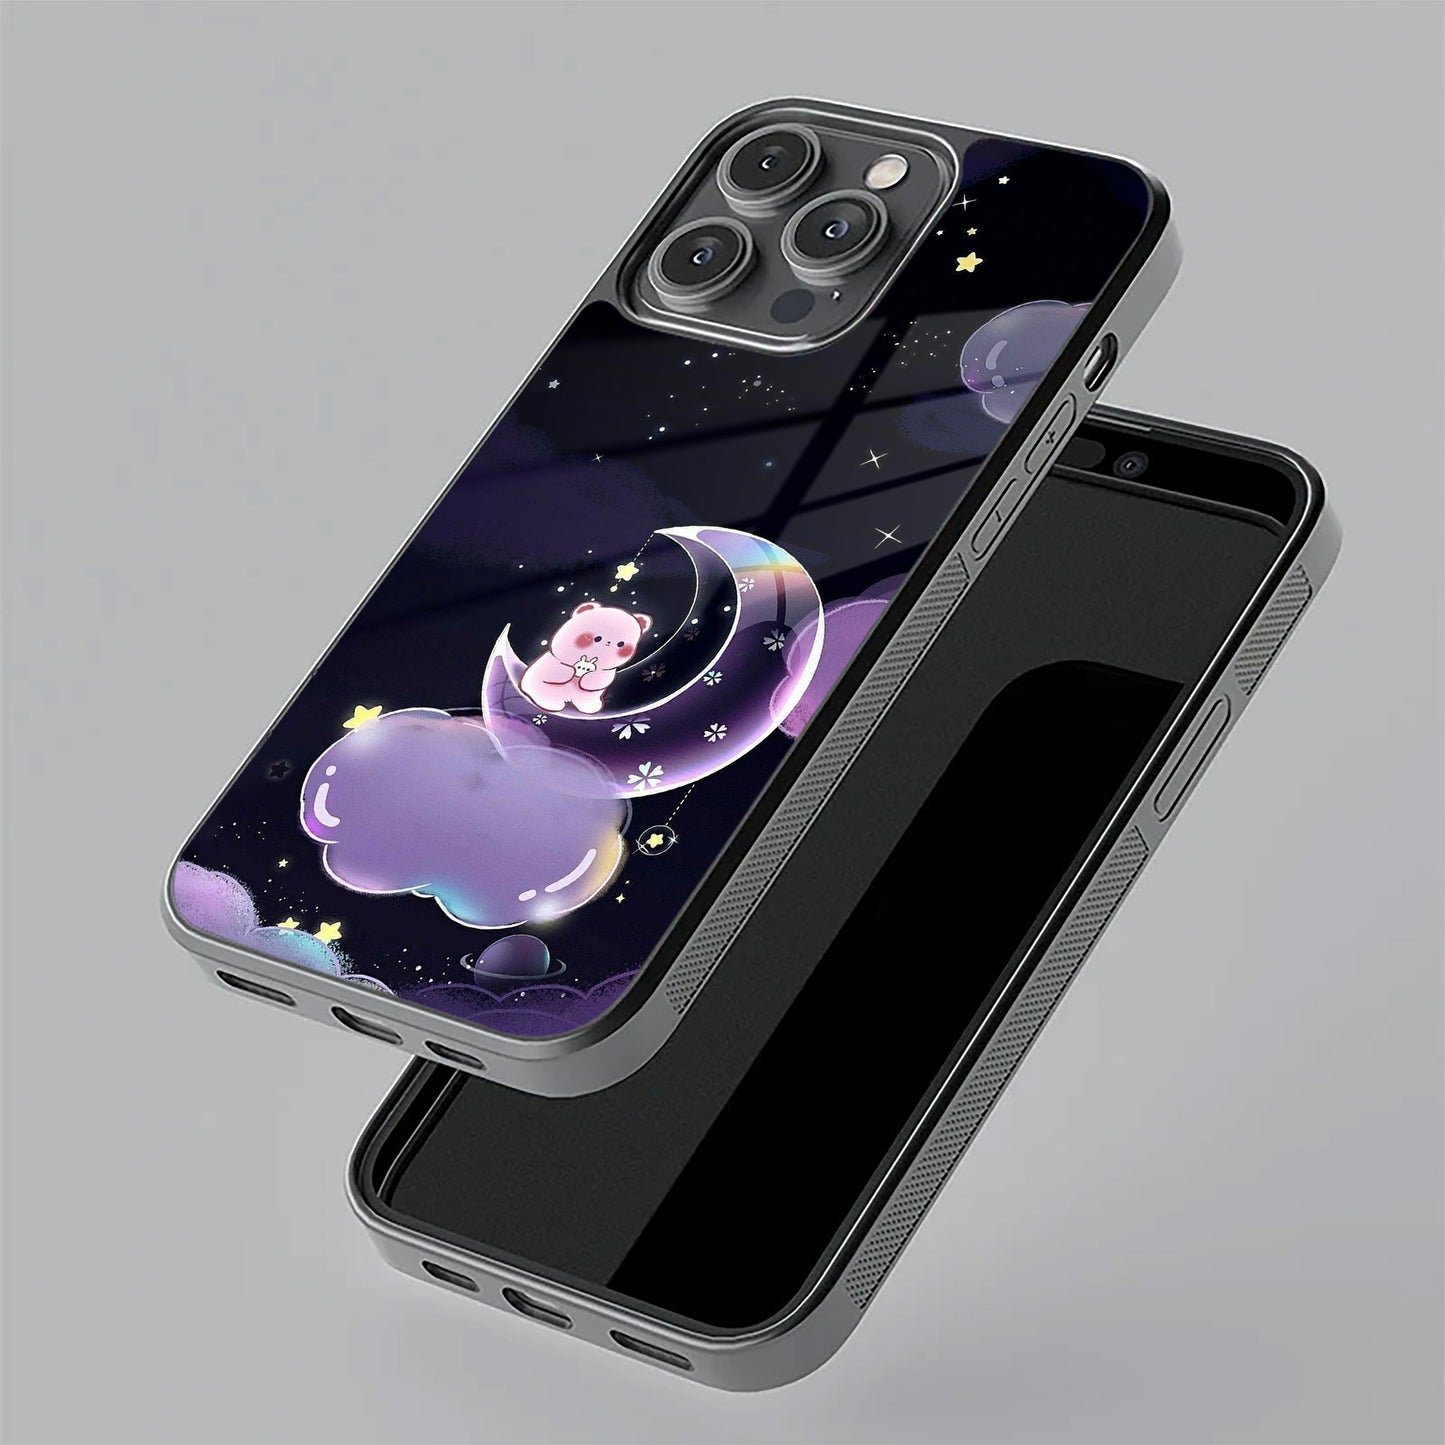 Sky Panda Design Glass Phone Case Cover For POCO